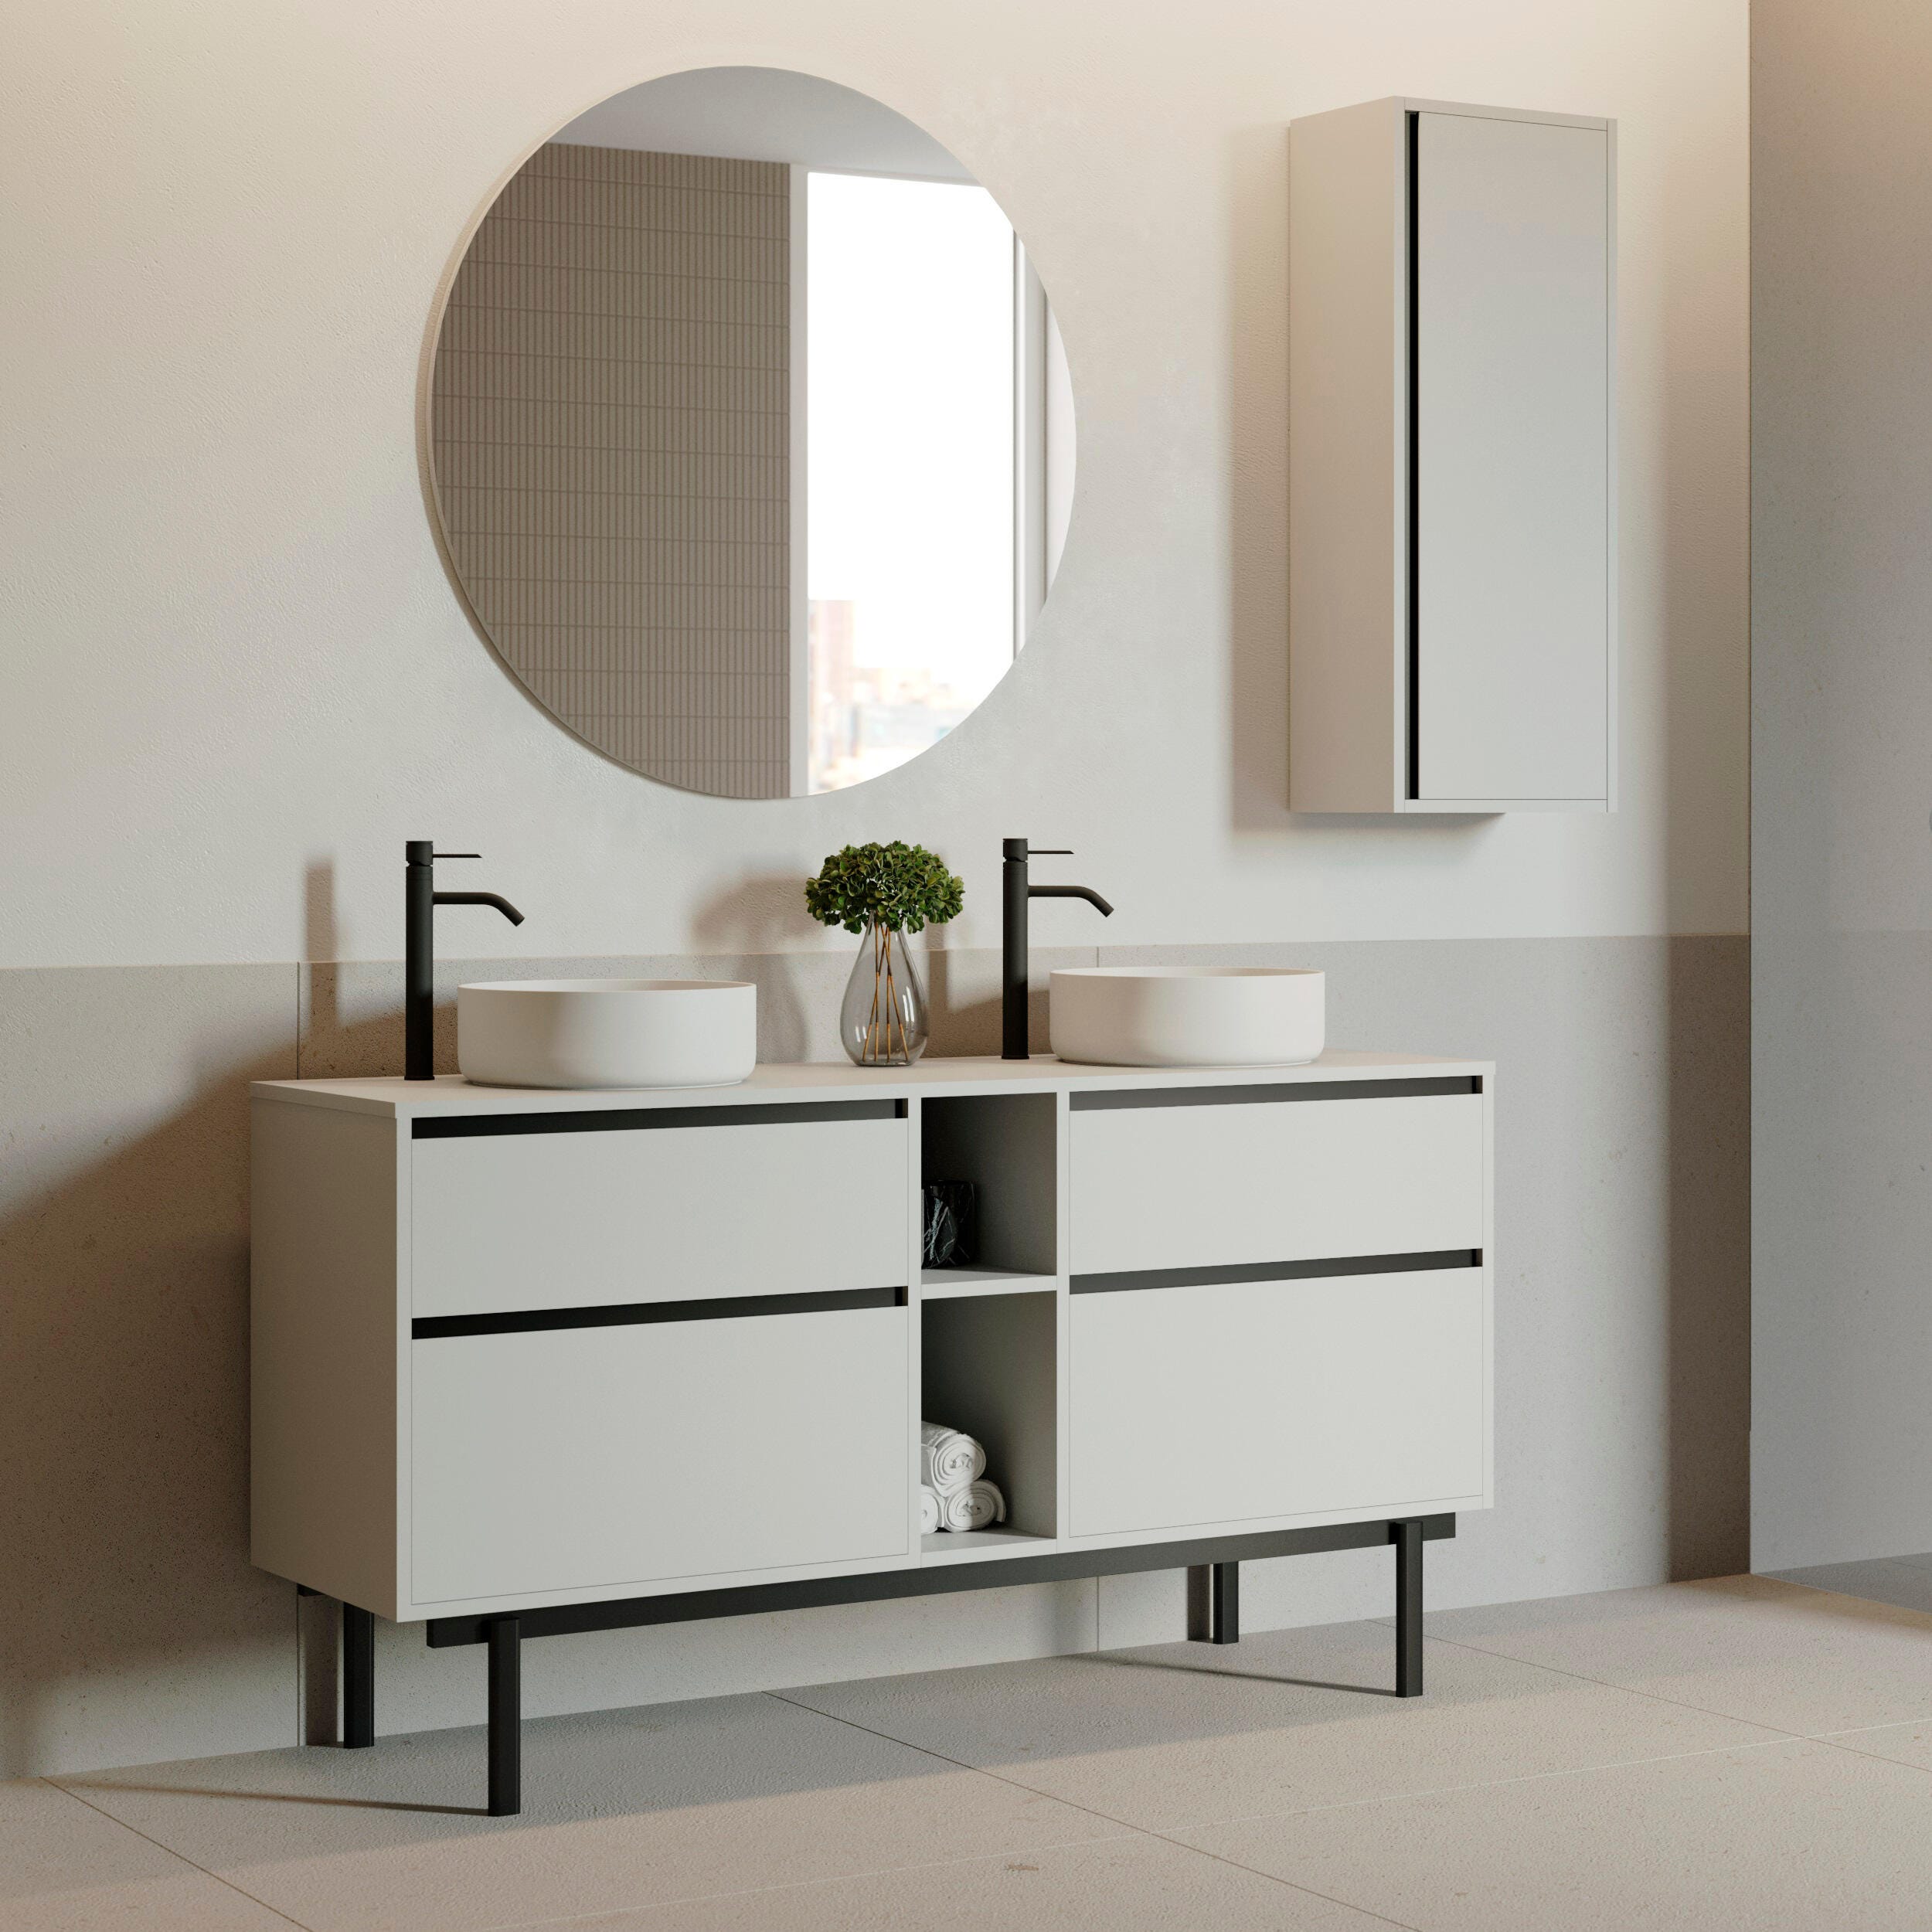 Muebles de lavabo con diseños exclusivos y originales - Foto 1